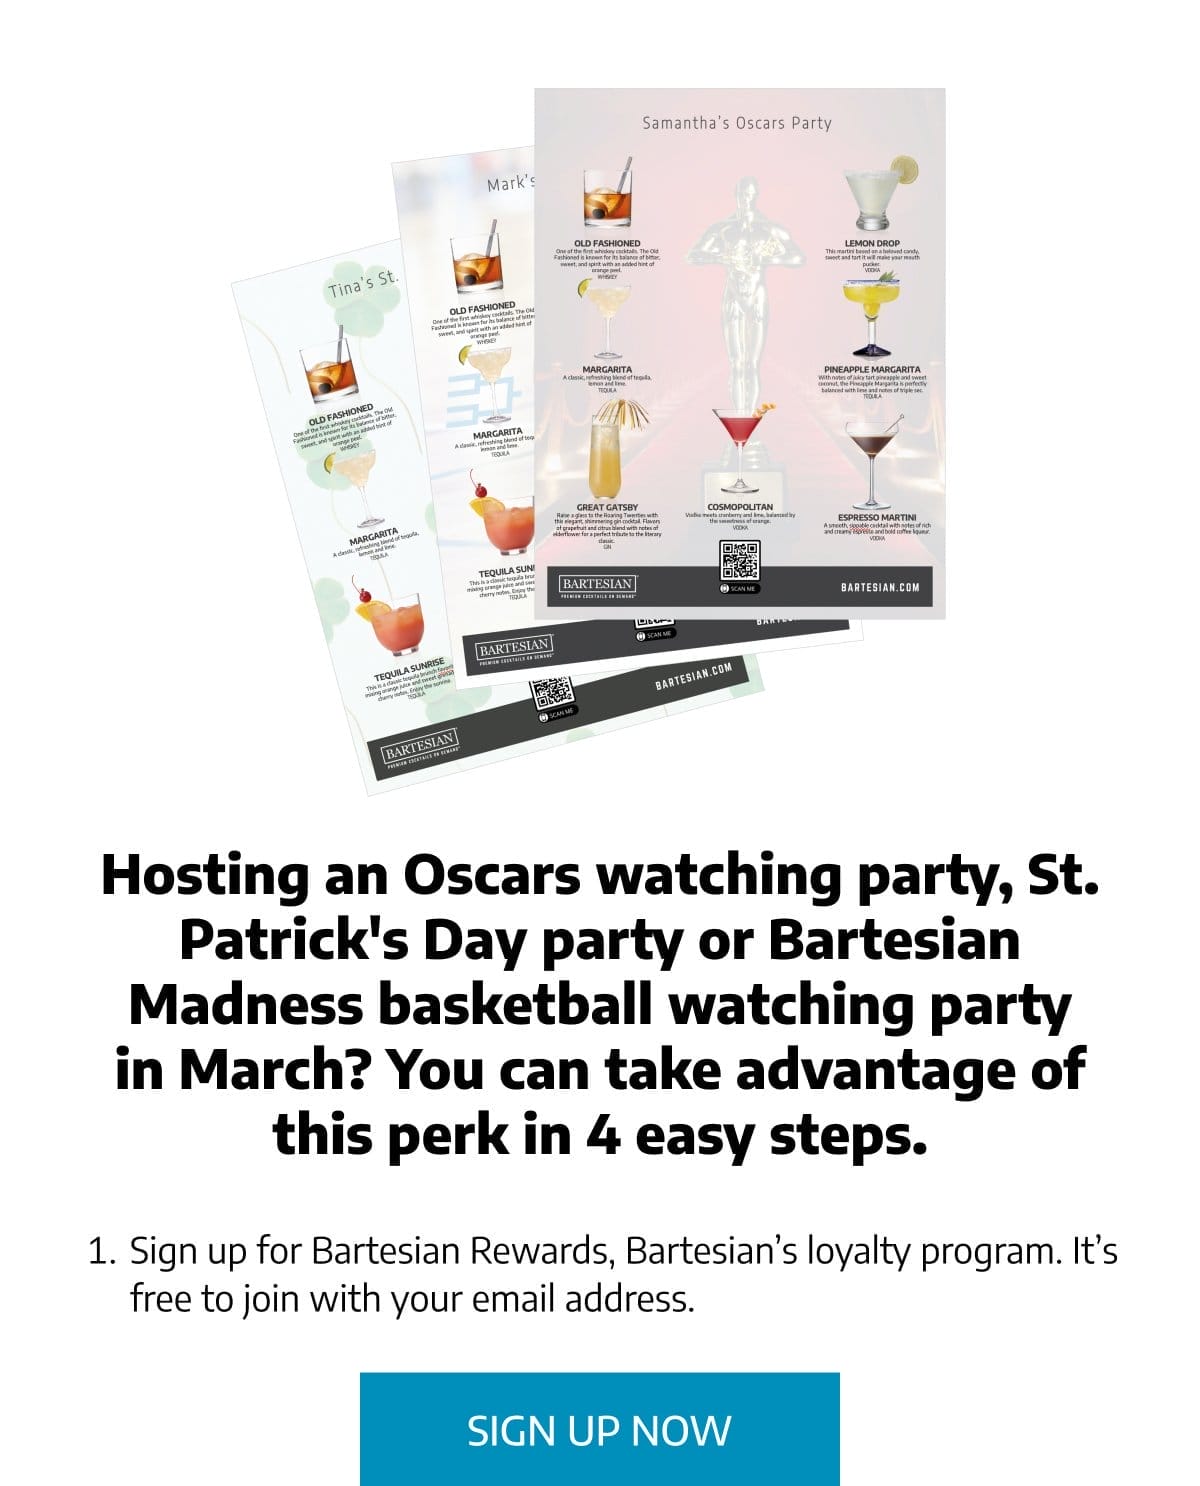 Sign Up for Bartesian Rewards